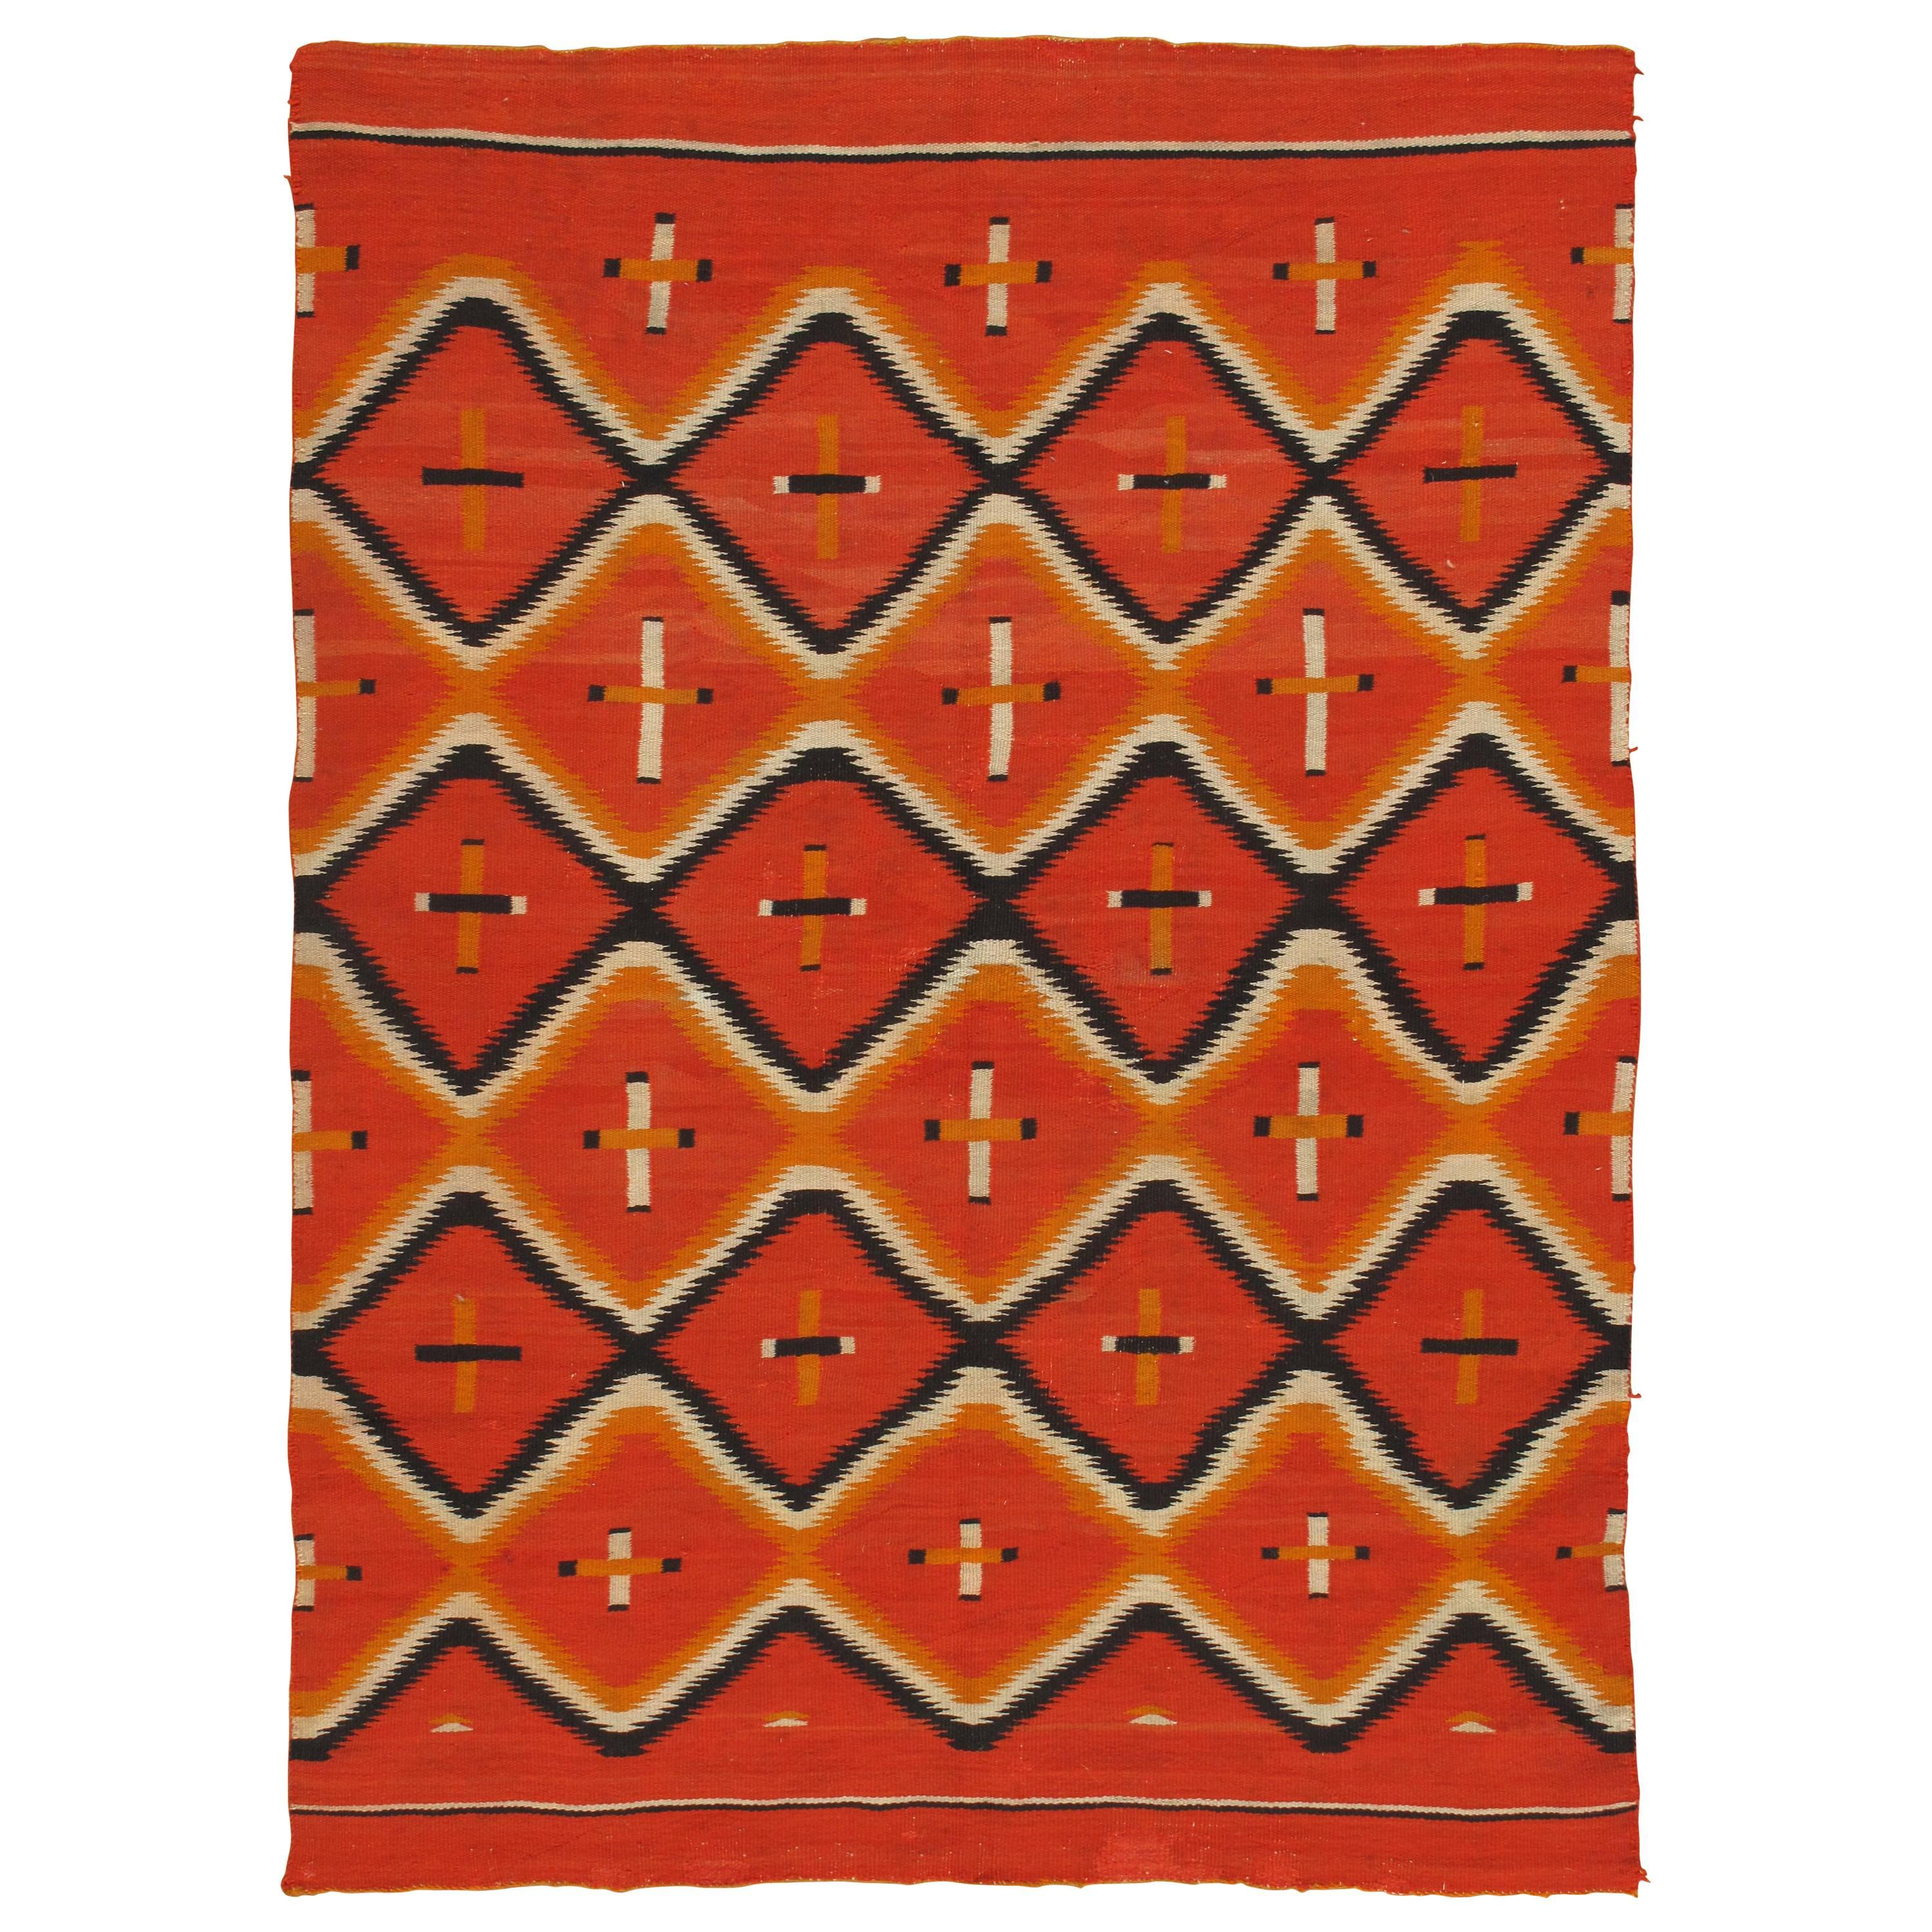 Antique Navajo Trans Blanket, Oriental Rug, Handmade Wool Rug, Orange